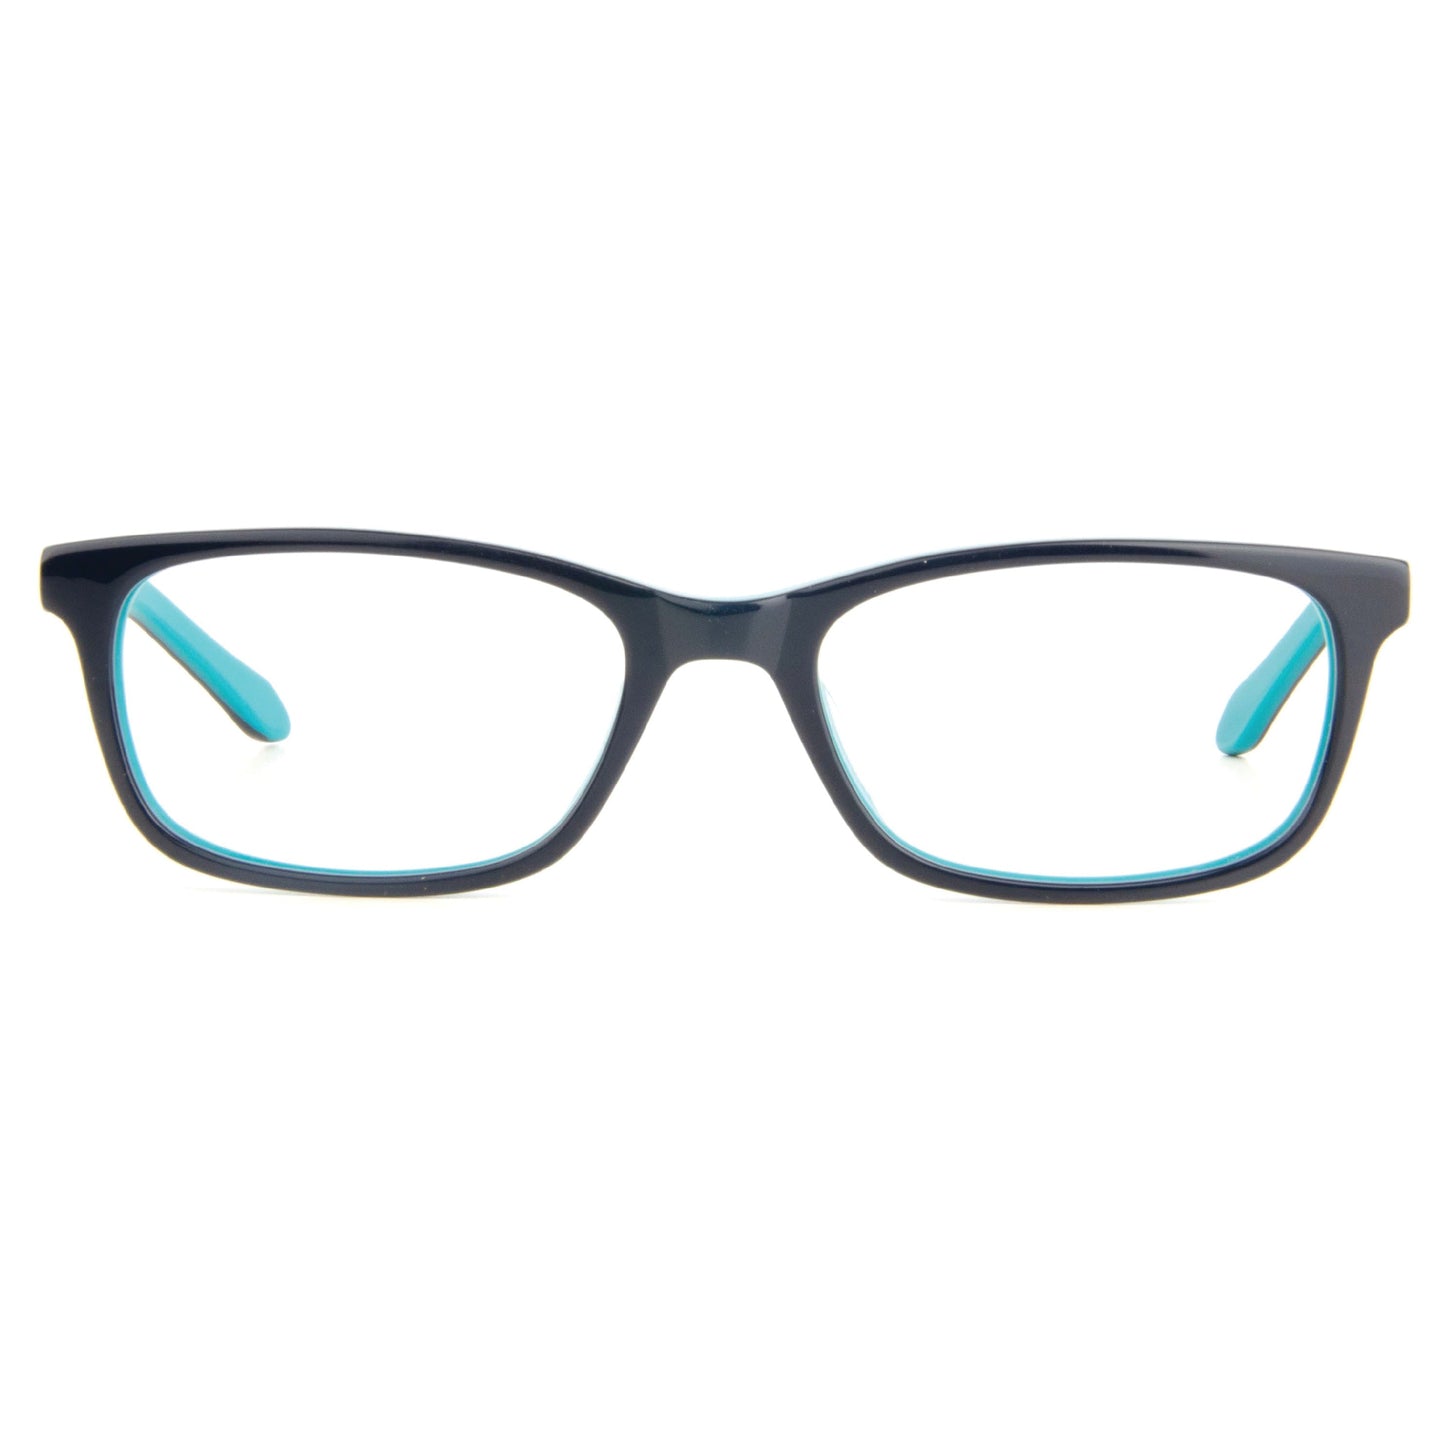 BRAVO Minimalist Eyeglasses for Teens SF4476 ARCADIO